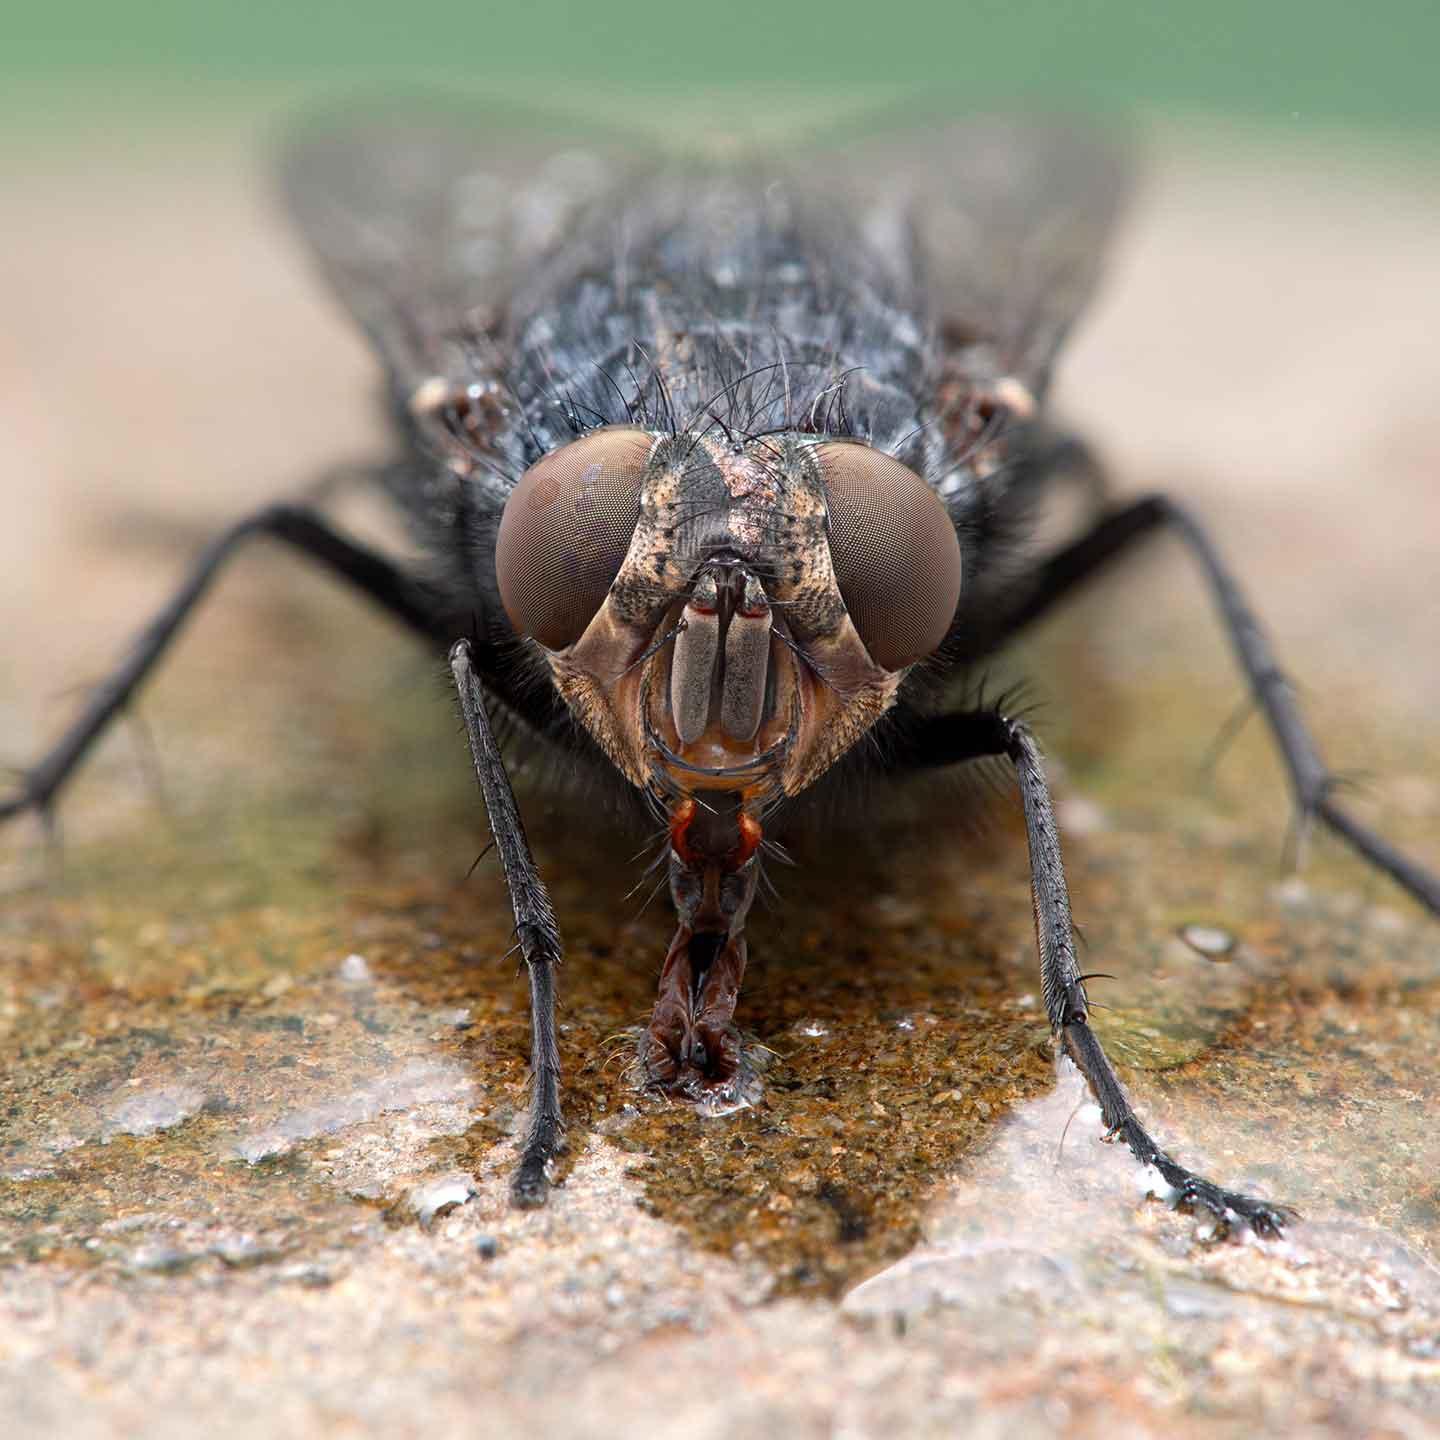 Moscarda, Calliphora vicina, retrato bebiendo cECP 2020, entomología forense ©Ernie Cooper, licencia ampliada de Adobe Stock